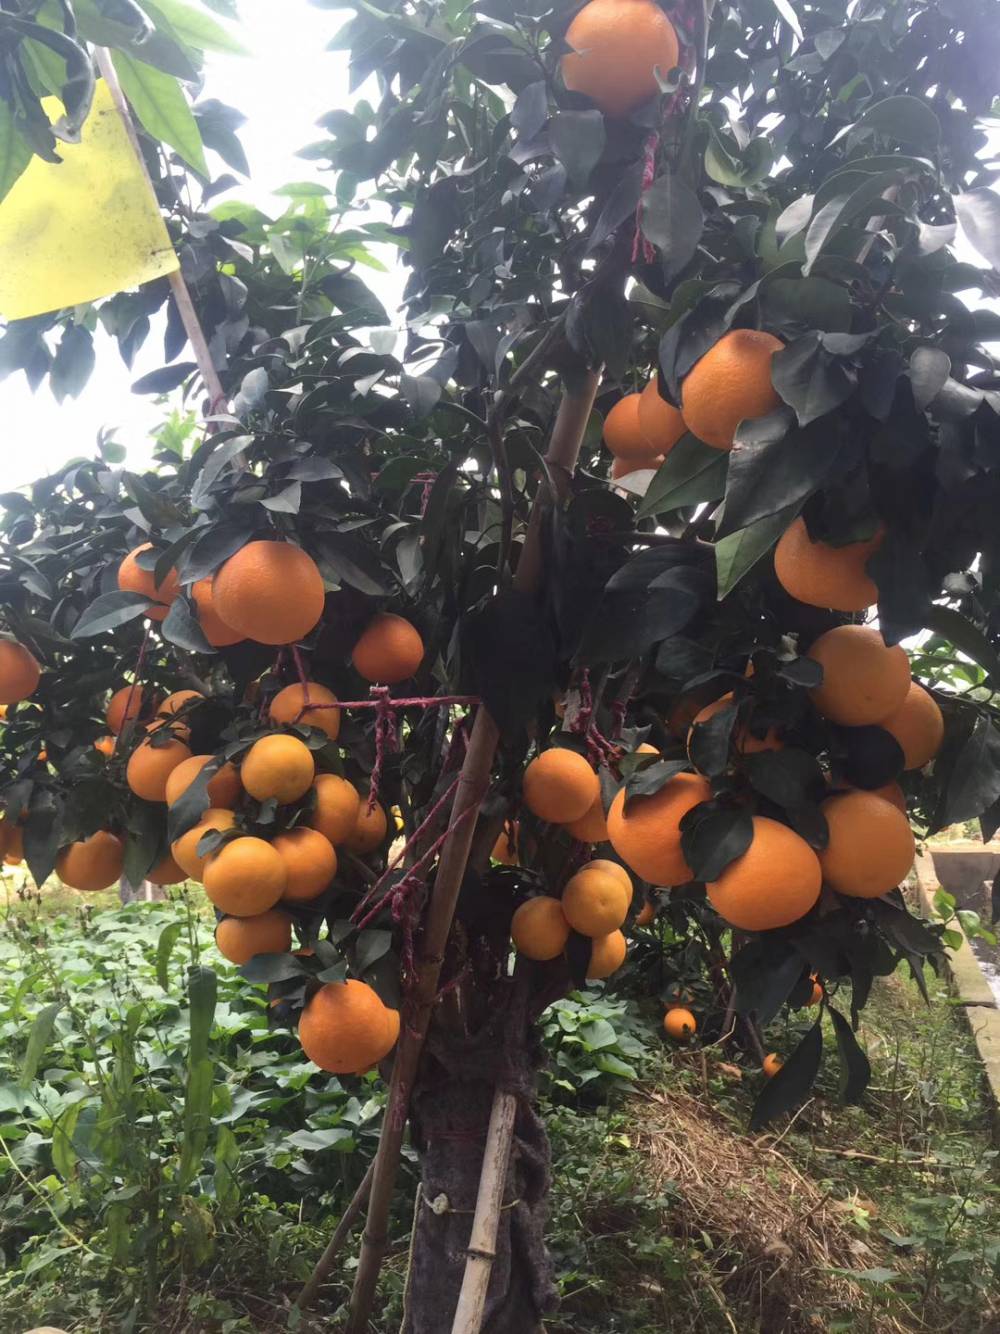 红美人柑橘生长环境图片